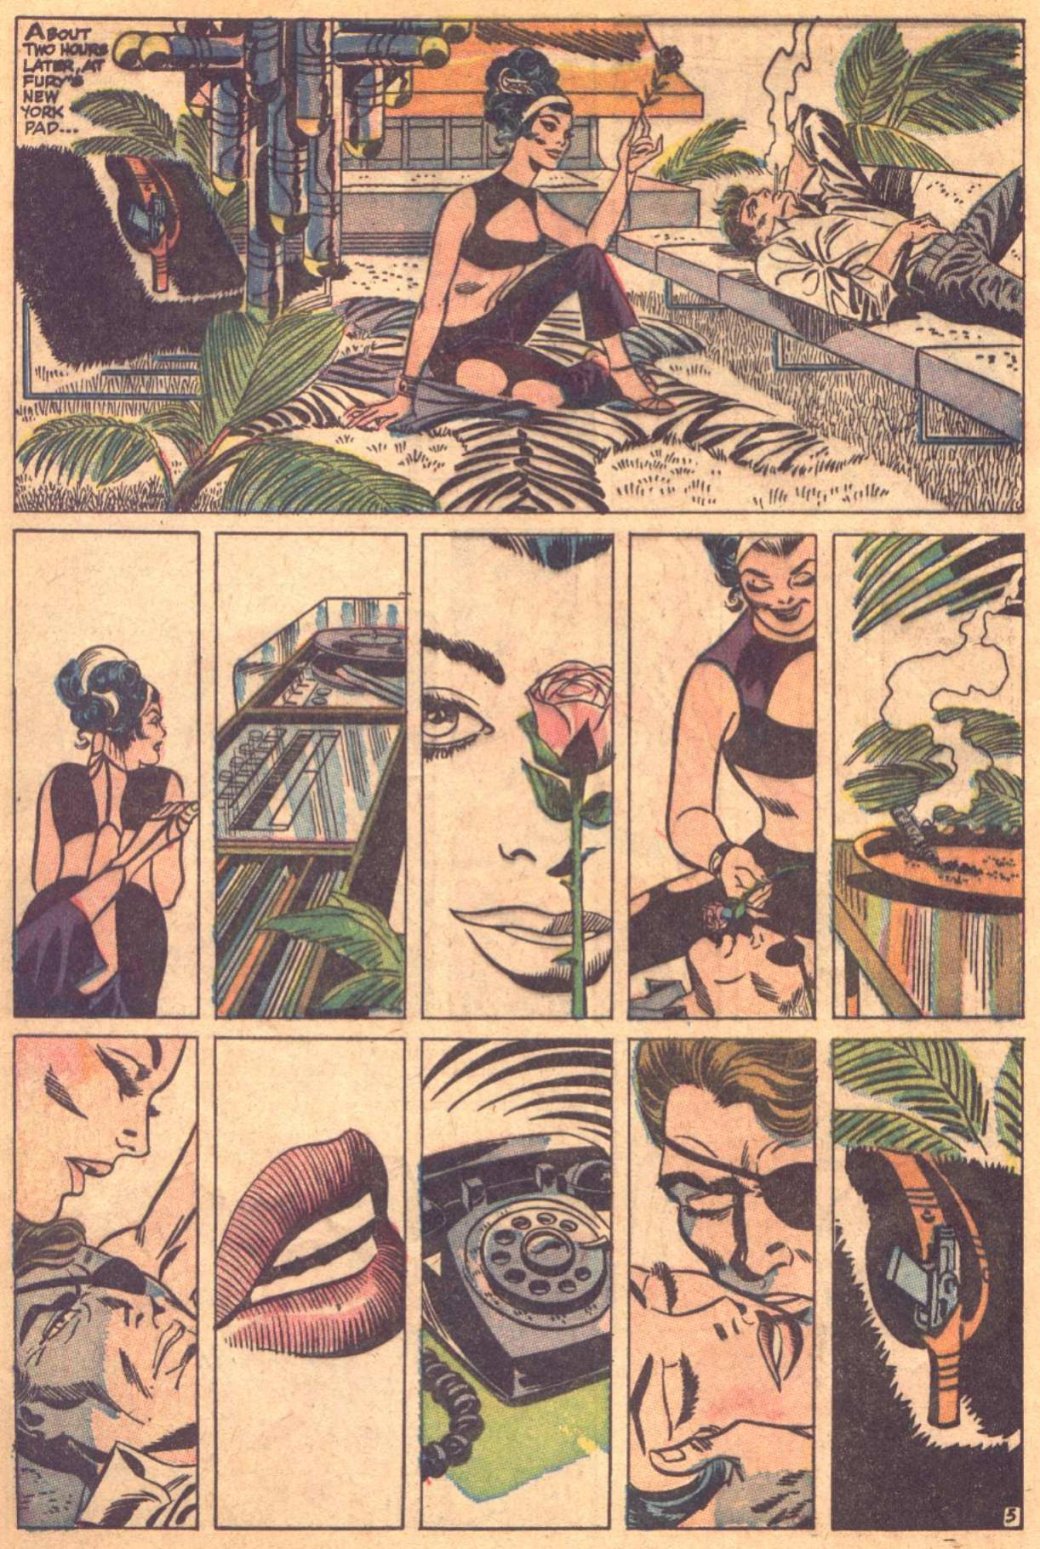 Галерея Не только Бэтмен: как секс и наготу цензурировали в комиксах - 2 фото